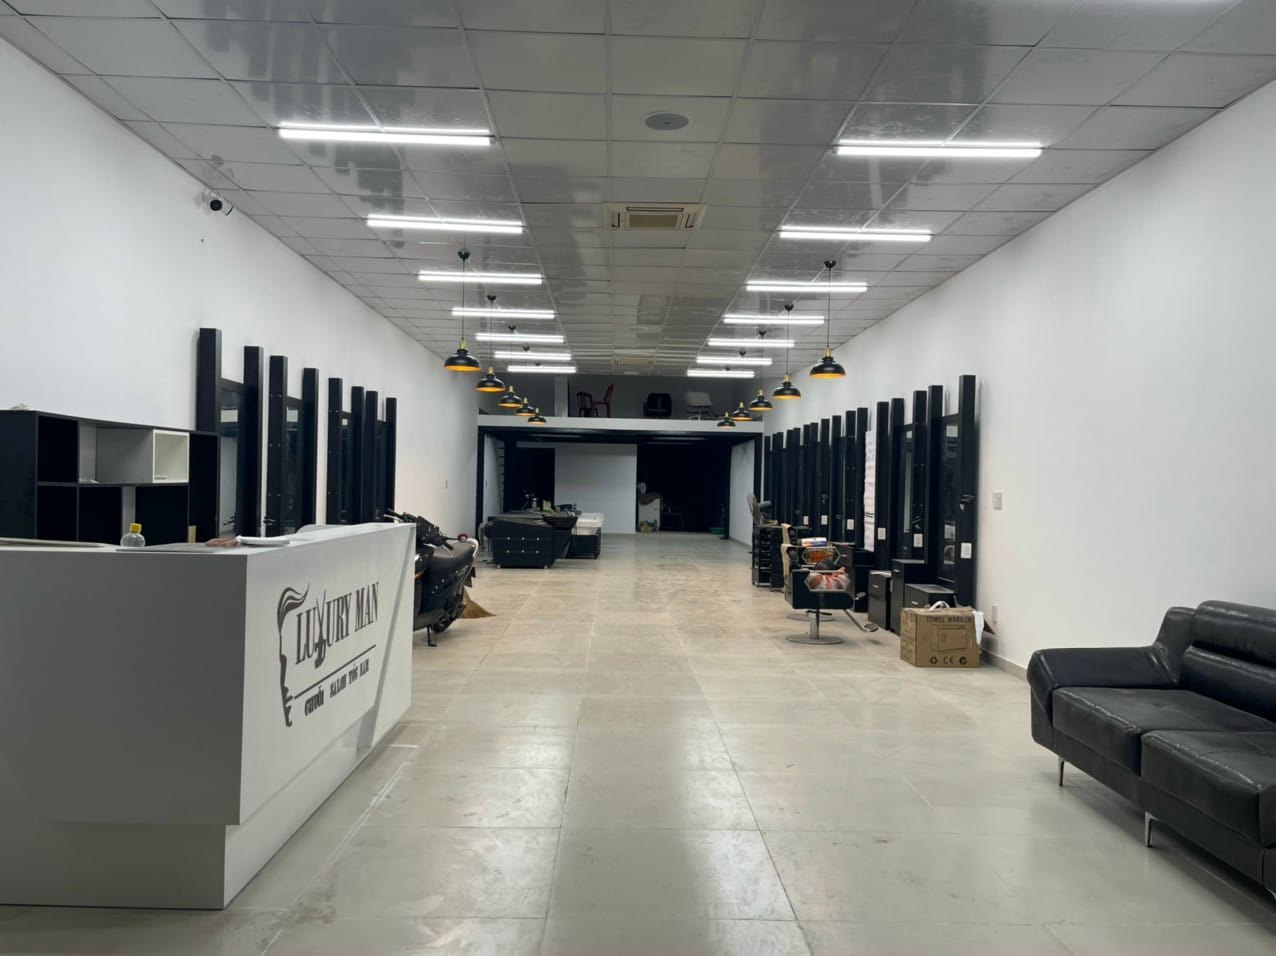 Chuỗi salon tóc nam Luxury Man sắp khai trương cơ sở thứ 5 tại Đồng Nai   LuxuryMan